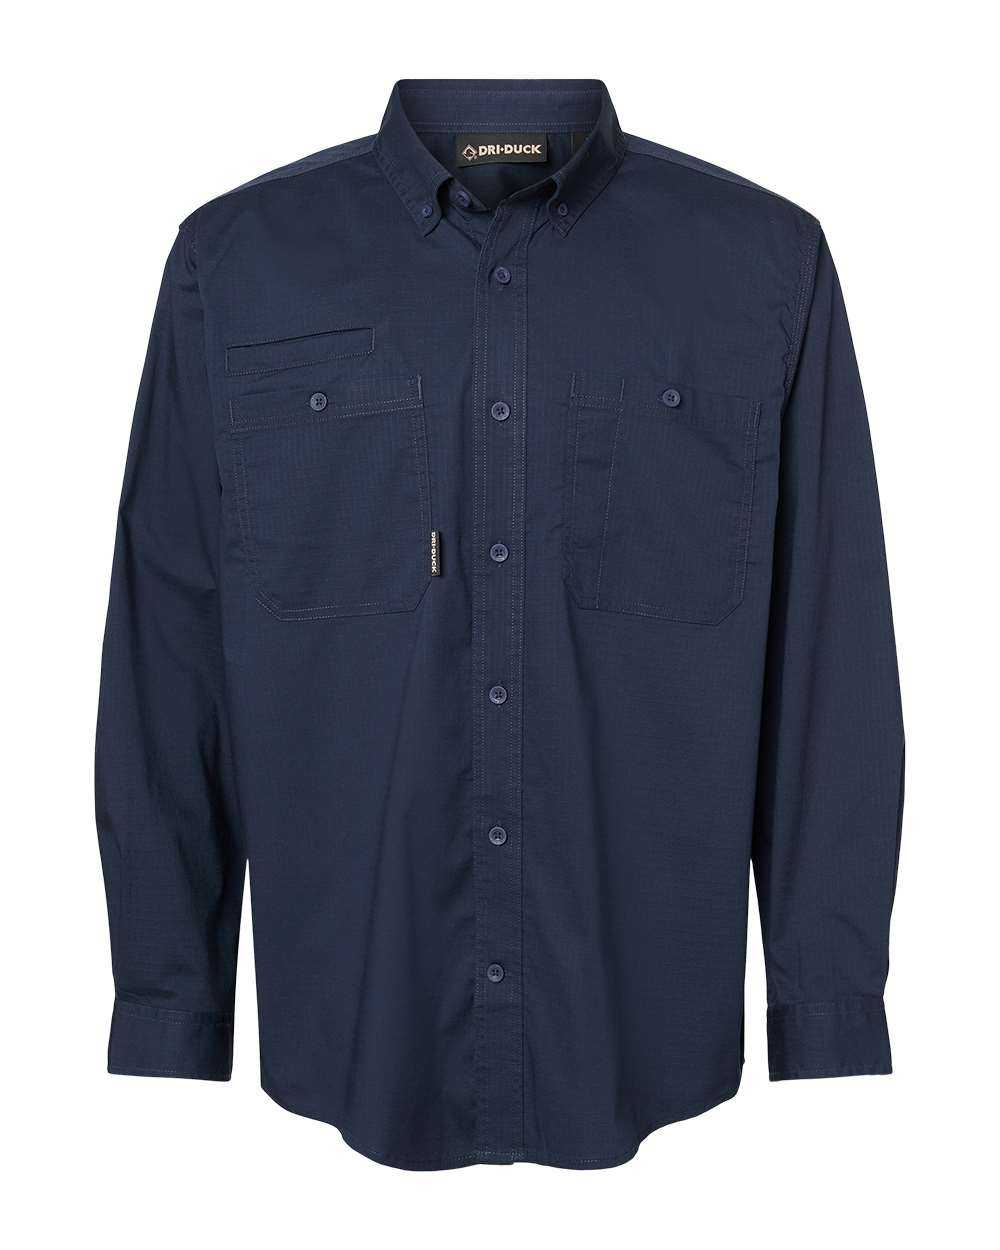 Dri Duck 4450T Craftsman Woven Shirt - Deep Blue - HIT a Double - 4